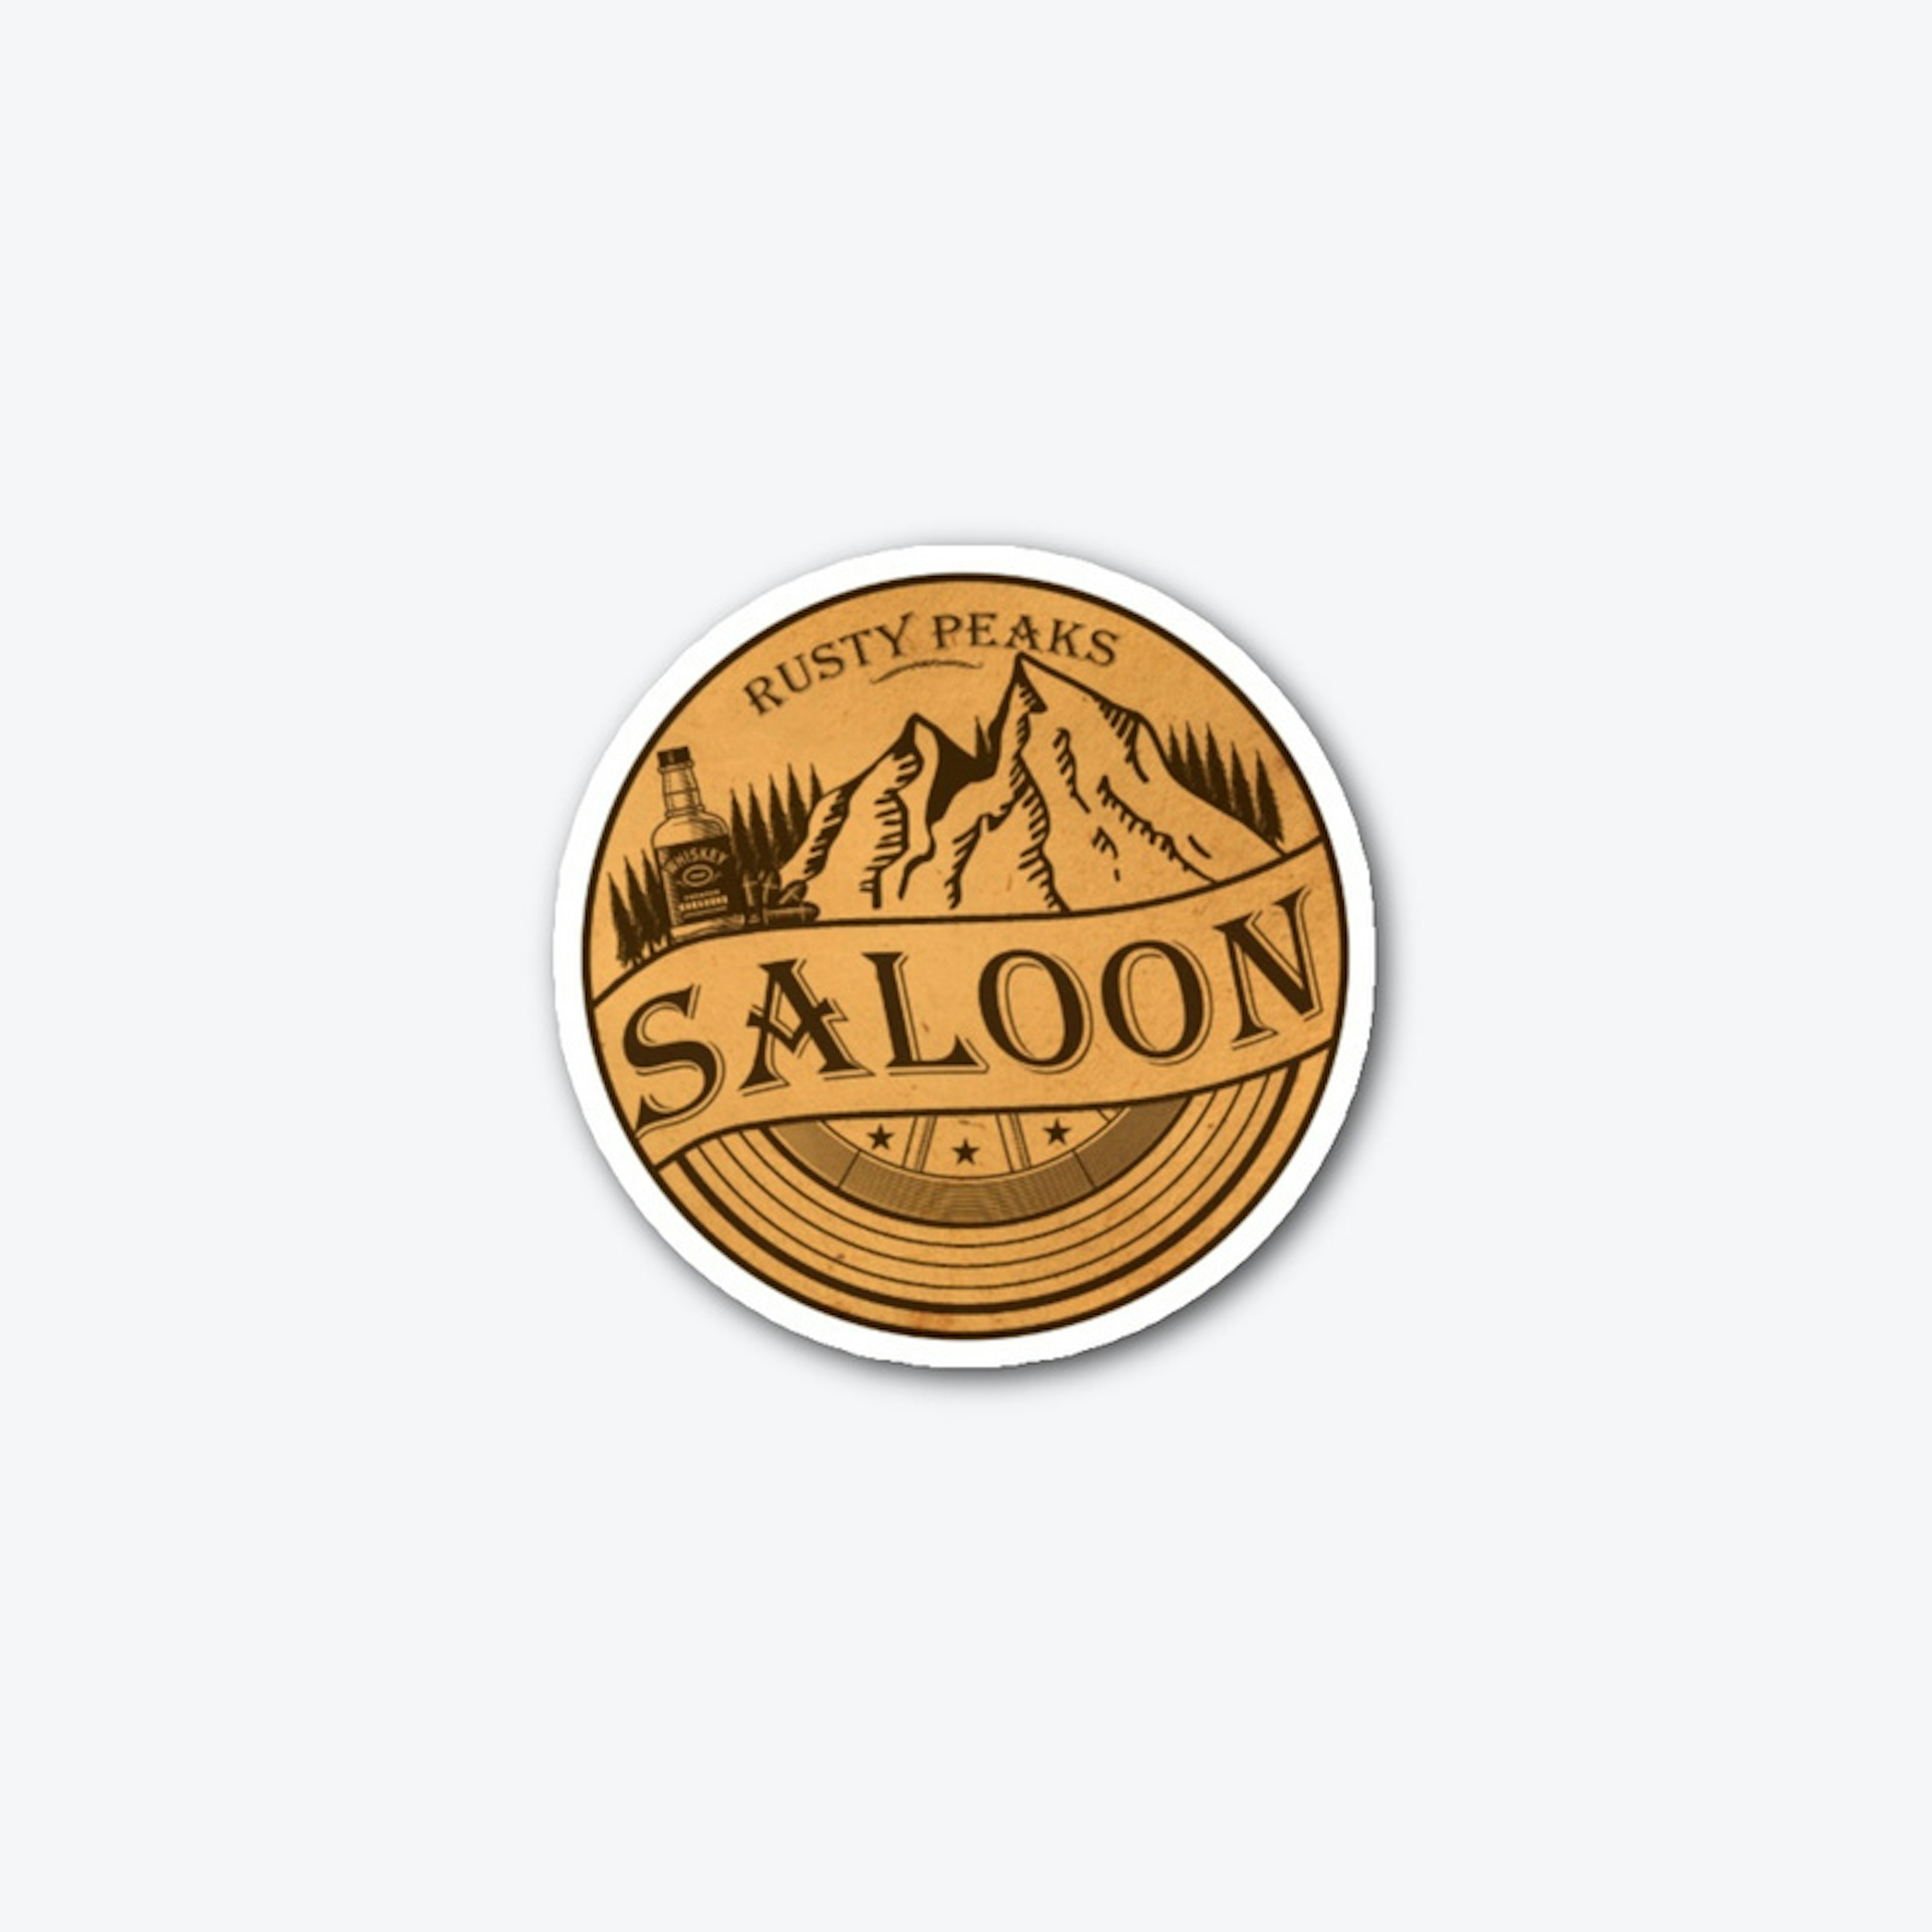 Rusty Peaks Saloon Sticker